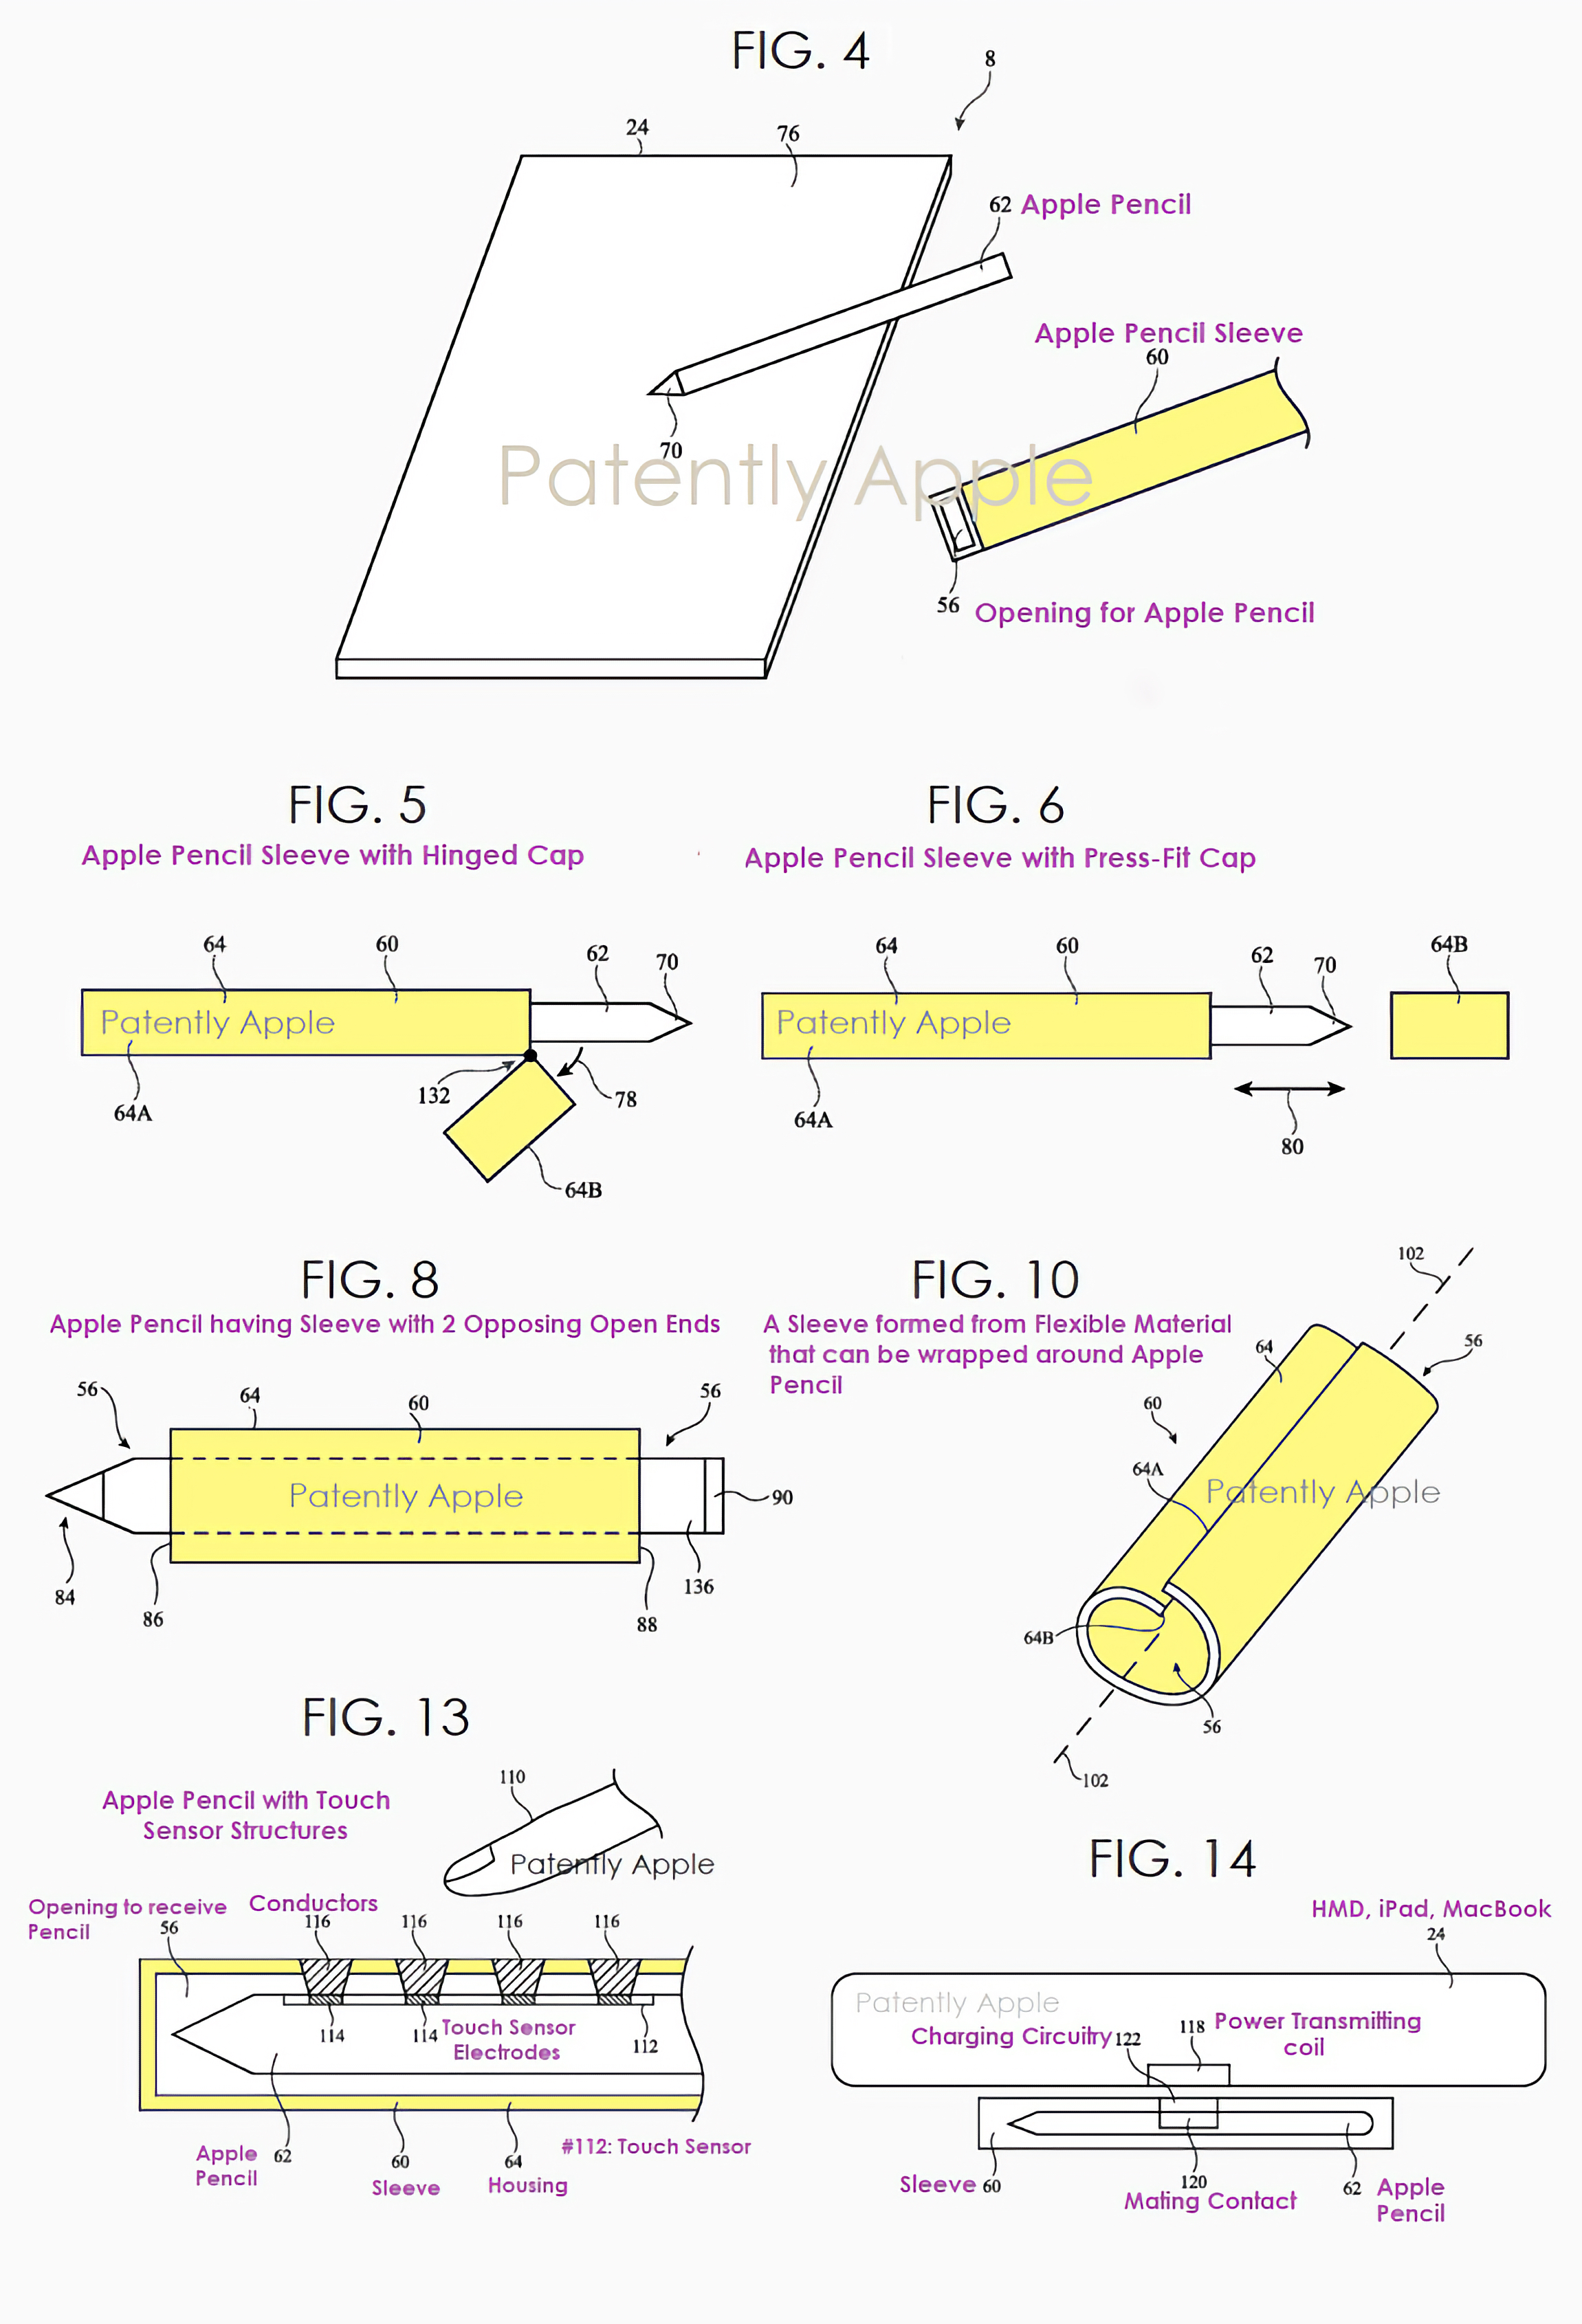 Патент Apple на аксессуар для Apple Pencil, который будет расширять его функционал (© Patently Apple)